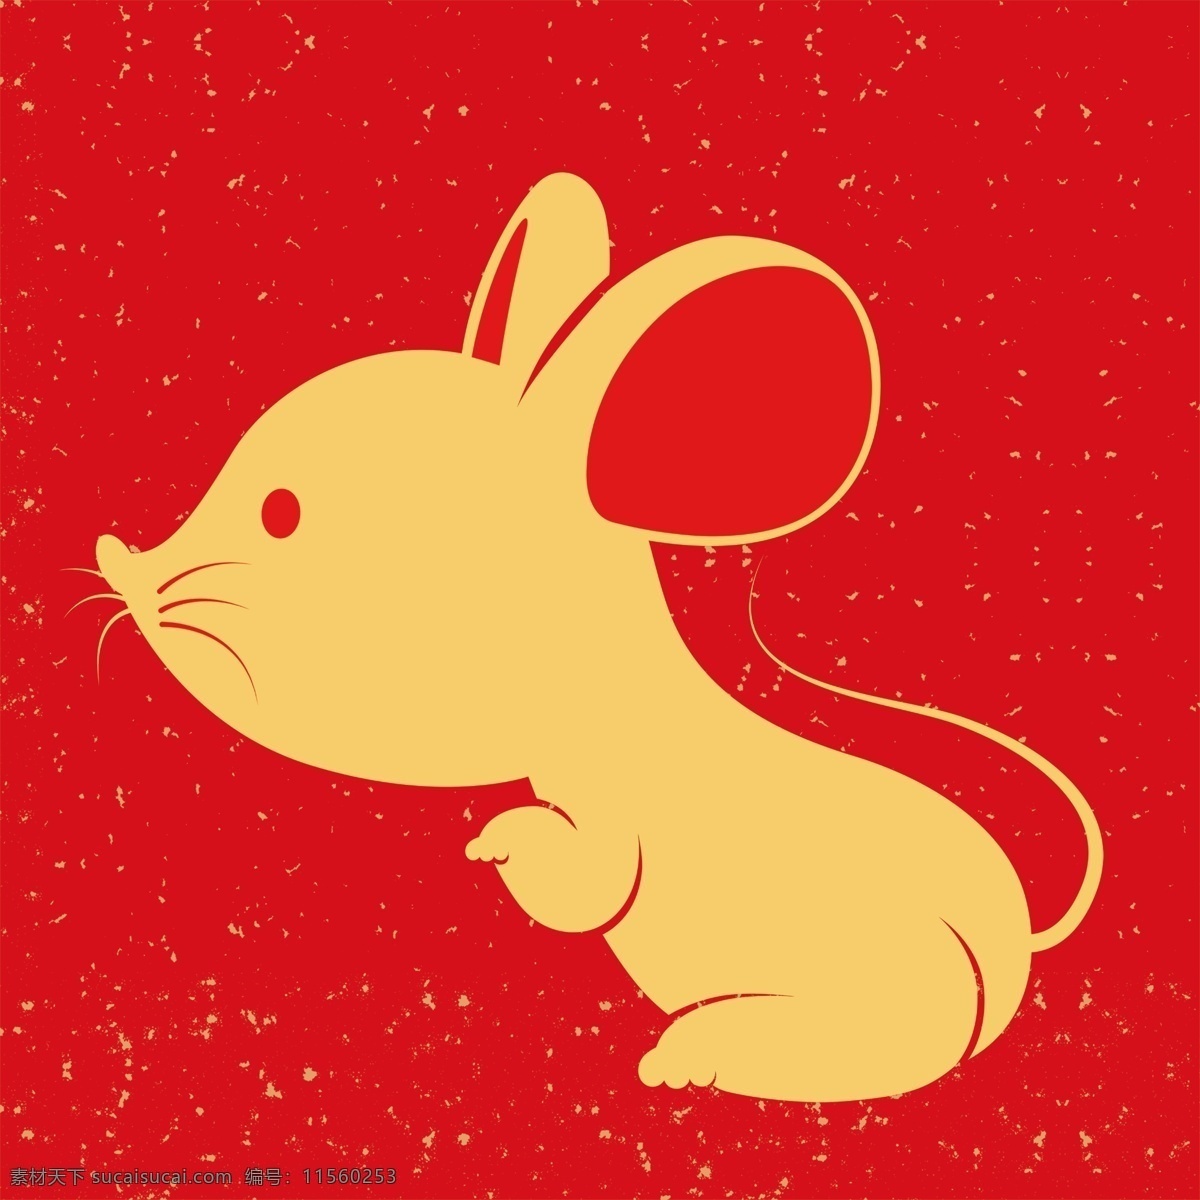 卡通老鼠 手绘老鼠 矢量老鼠 老鼠吉祥物 老鼠卡通造型 鼠年设计素材 可爱老鼠 2020老鼠 鼠年 冬天老鼠 奶酪老鼠 卡通鼠 鼠年素材 2020 年 矢量图 老鼠